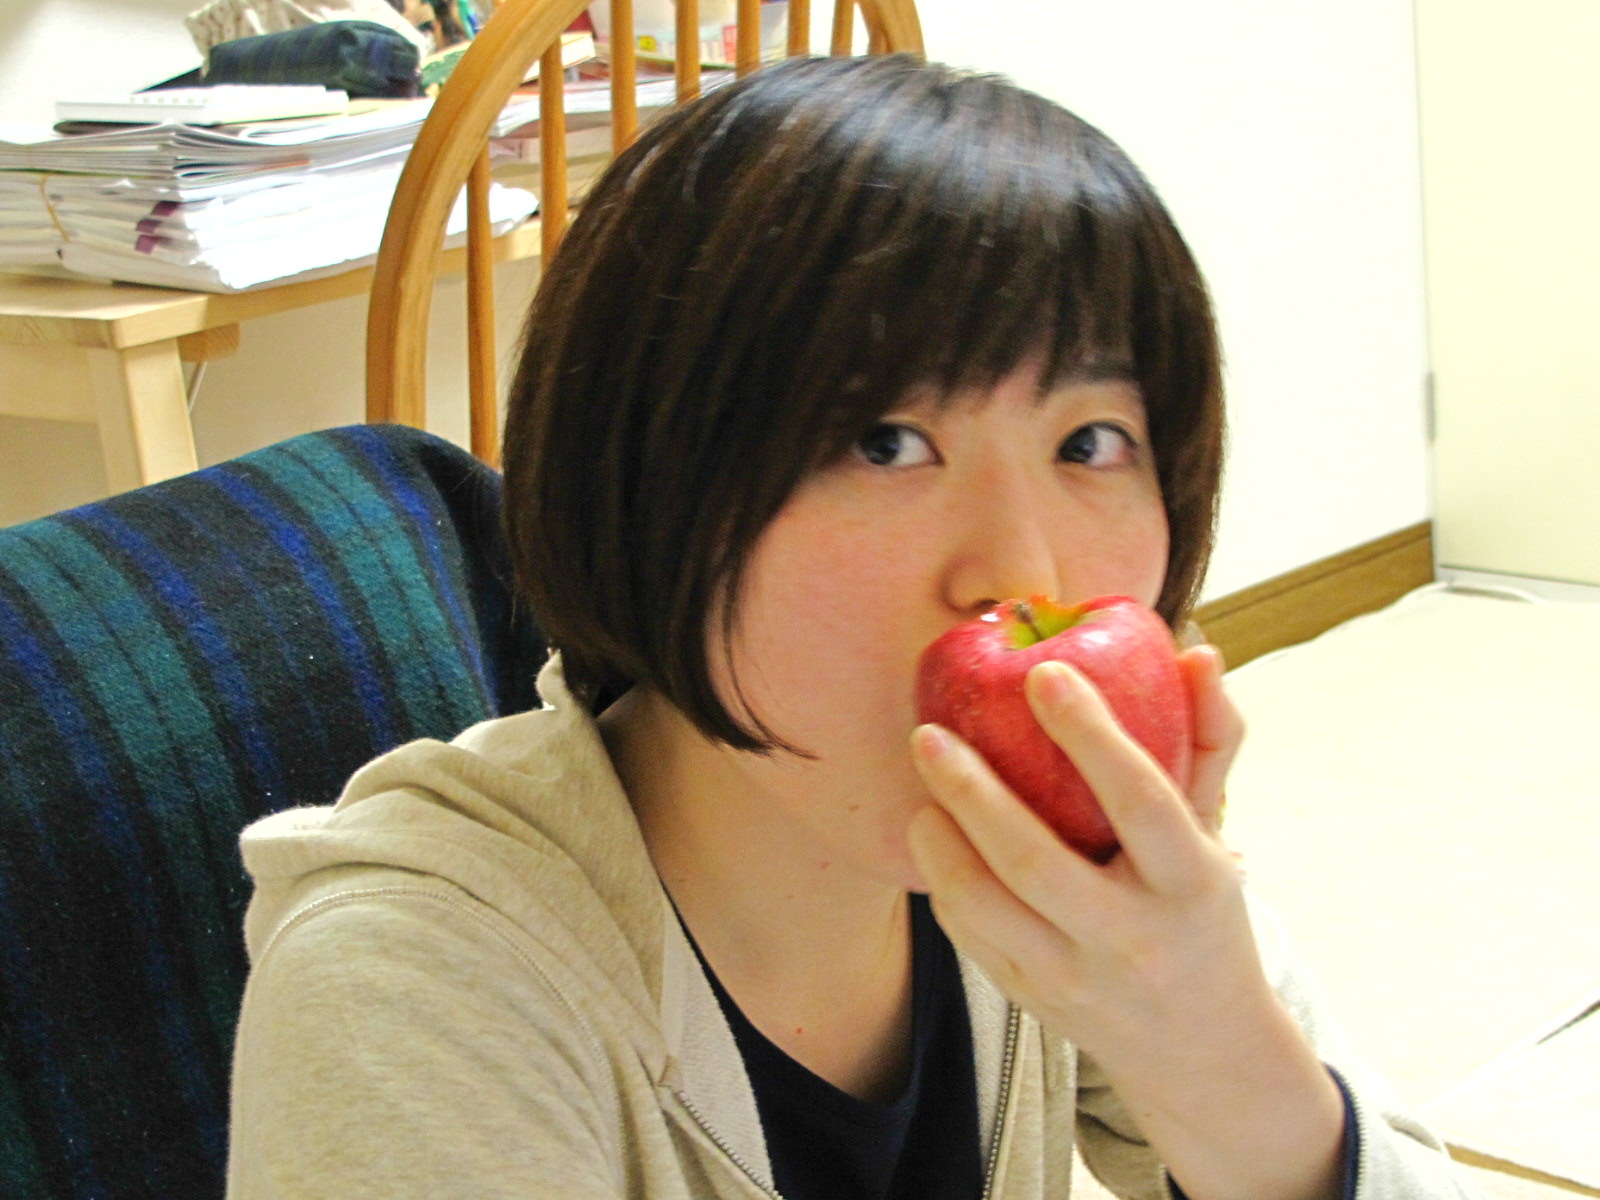 ブログ『保存食、簡易食にりんごを』